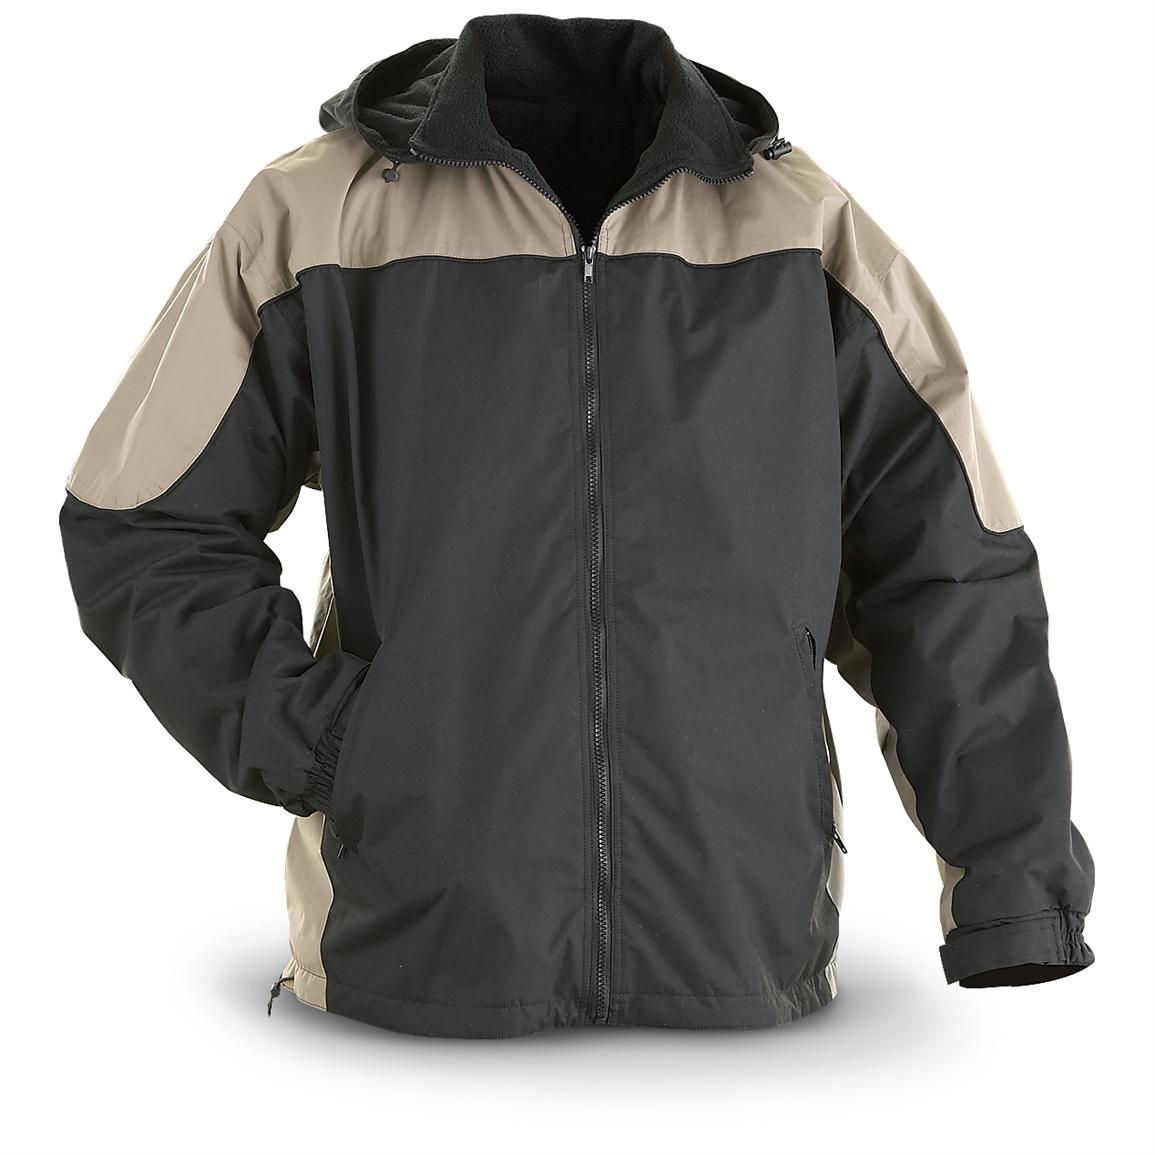 fleece lined waterproof jacket sports oscar jackets coats insulated khaki outerwear sportsman guide